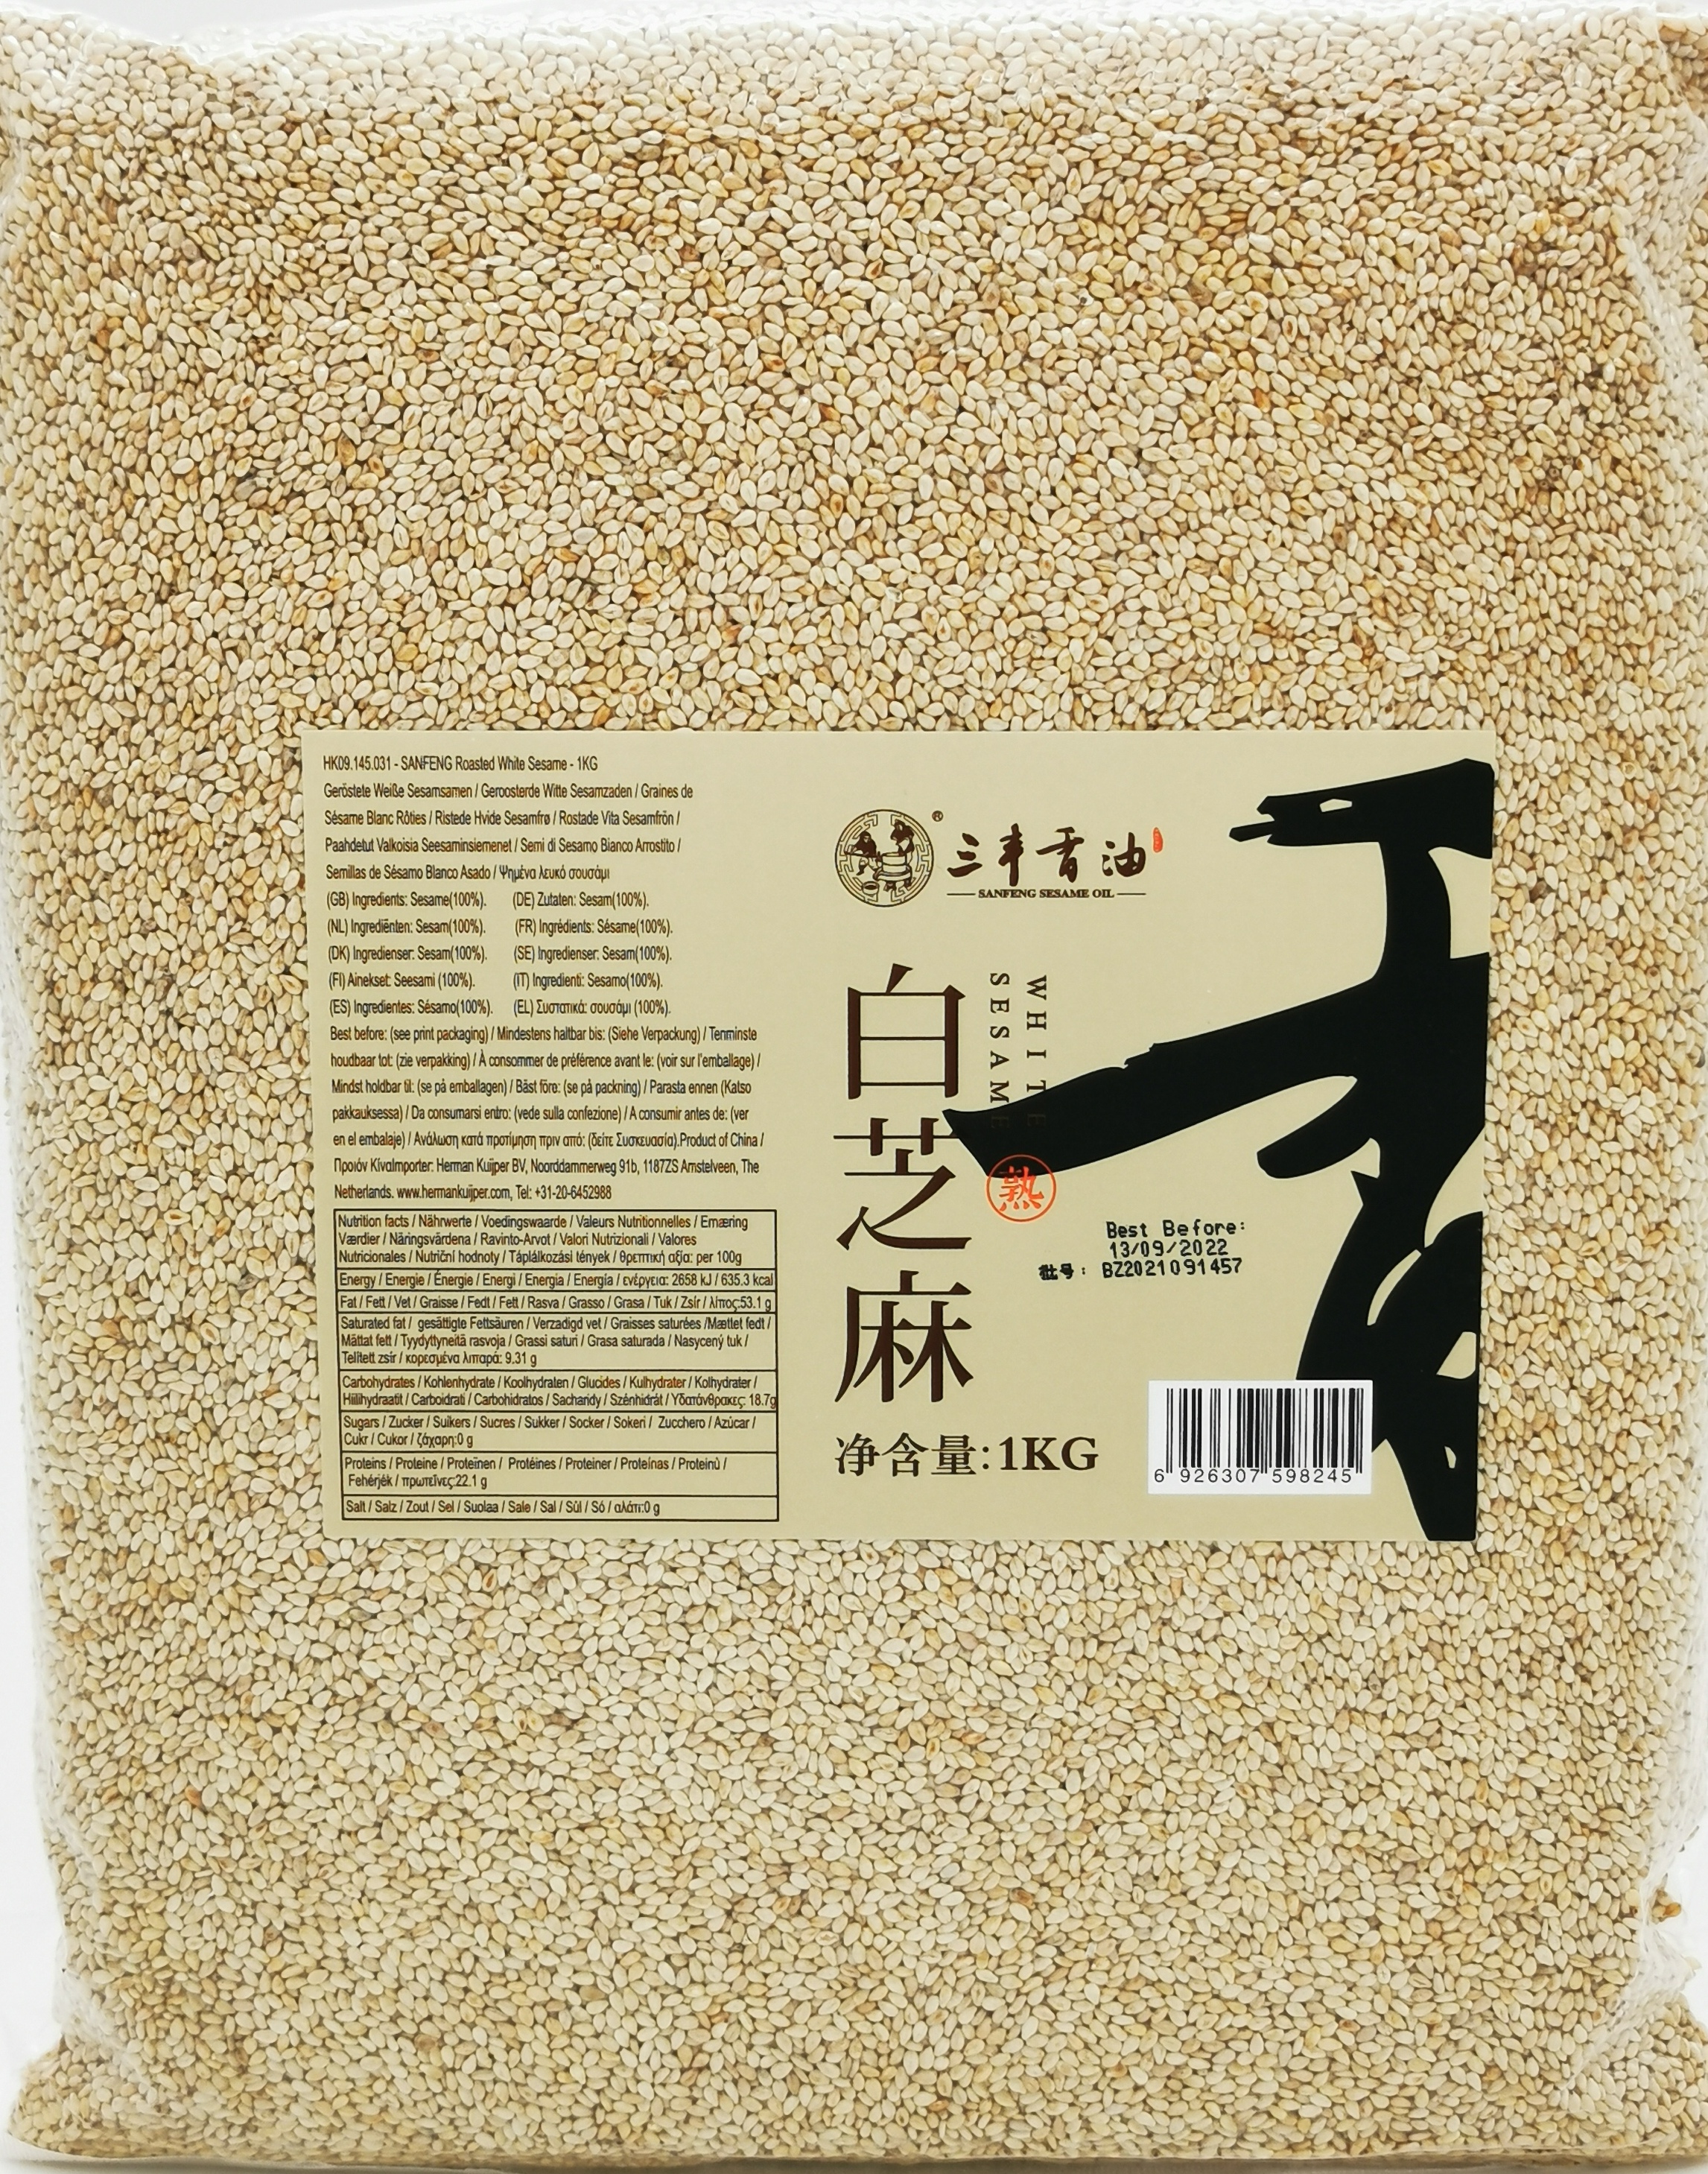 Sanfeng roasted white sesame seeds 1kg